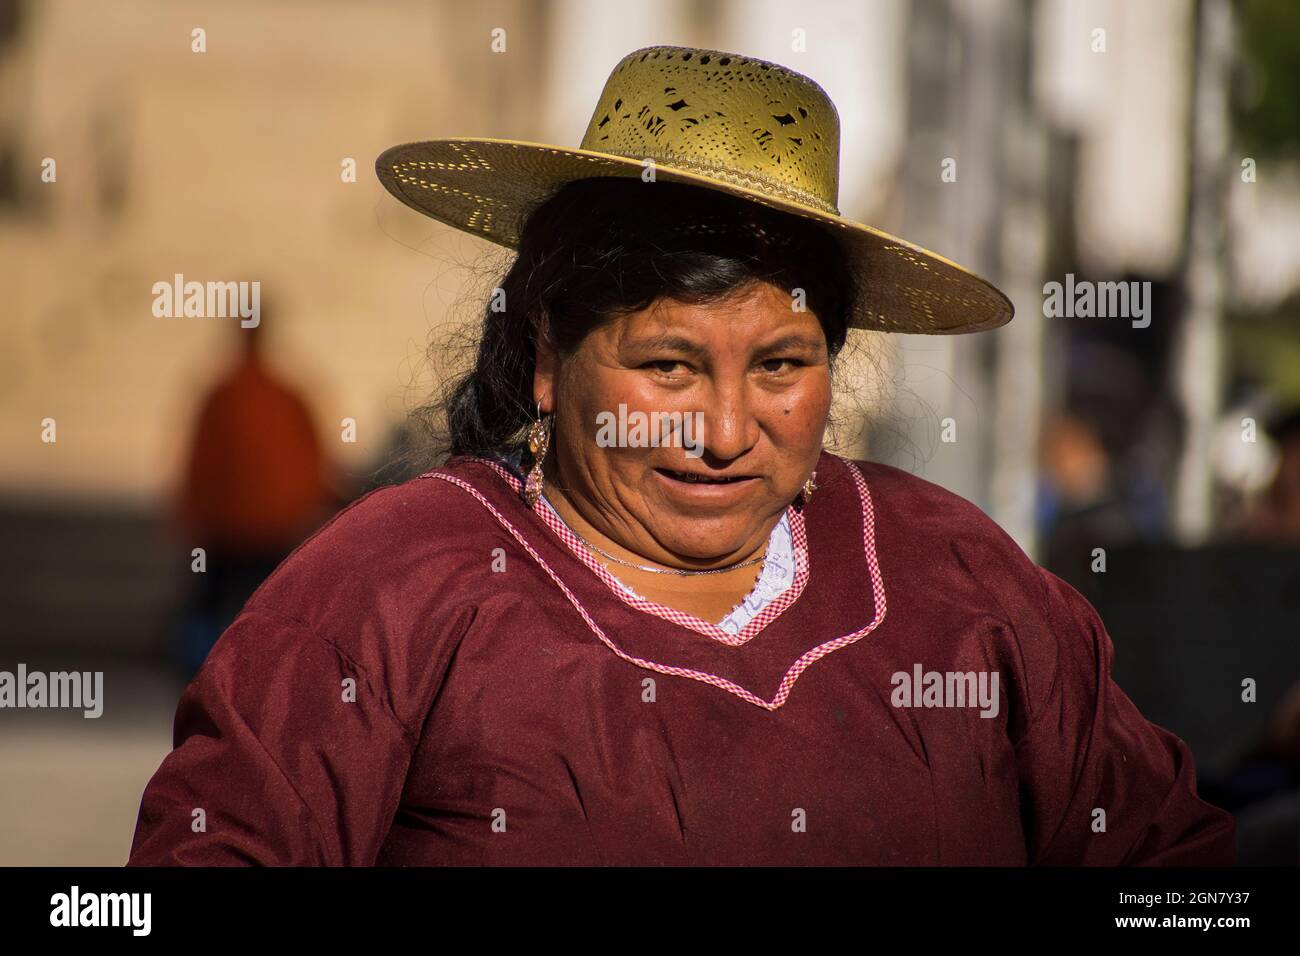 Femme indigène typique de la Puna américaine de Souht avec costume typique. Jujuy, Argentine Banque D'Images